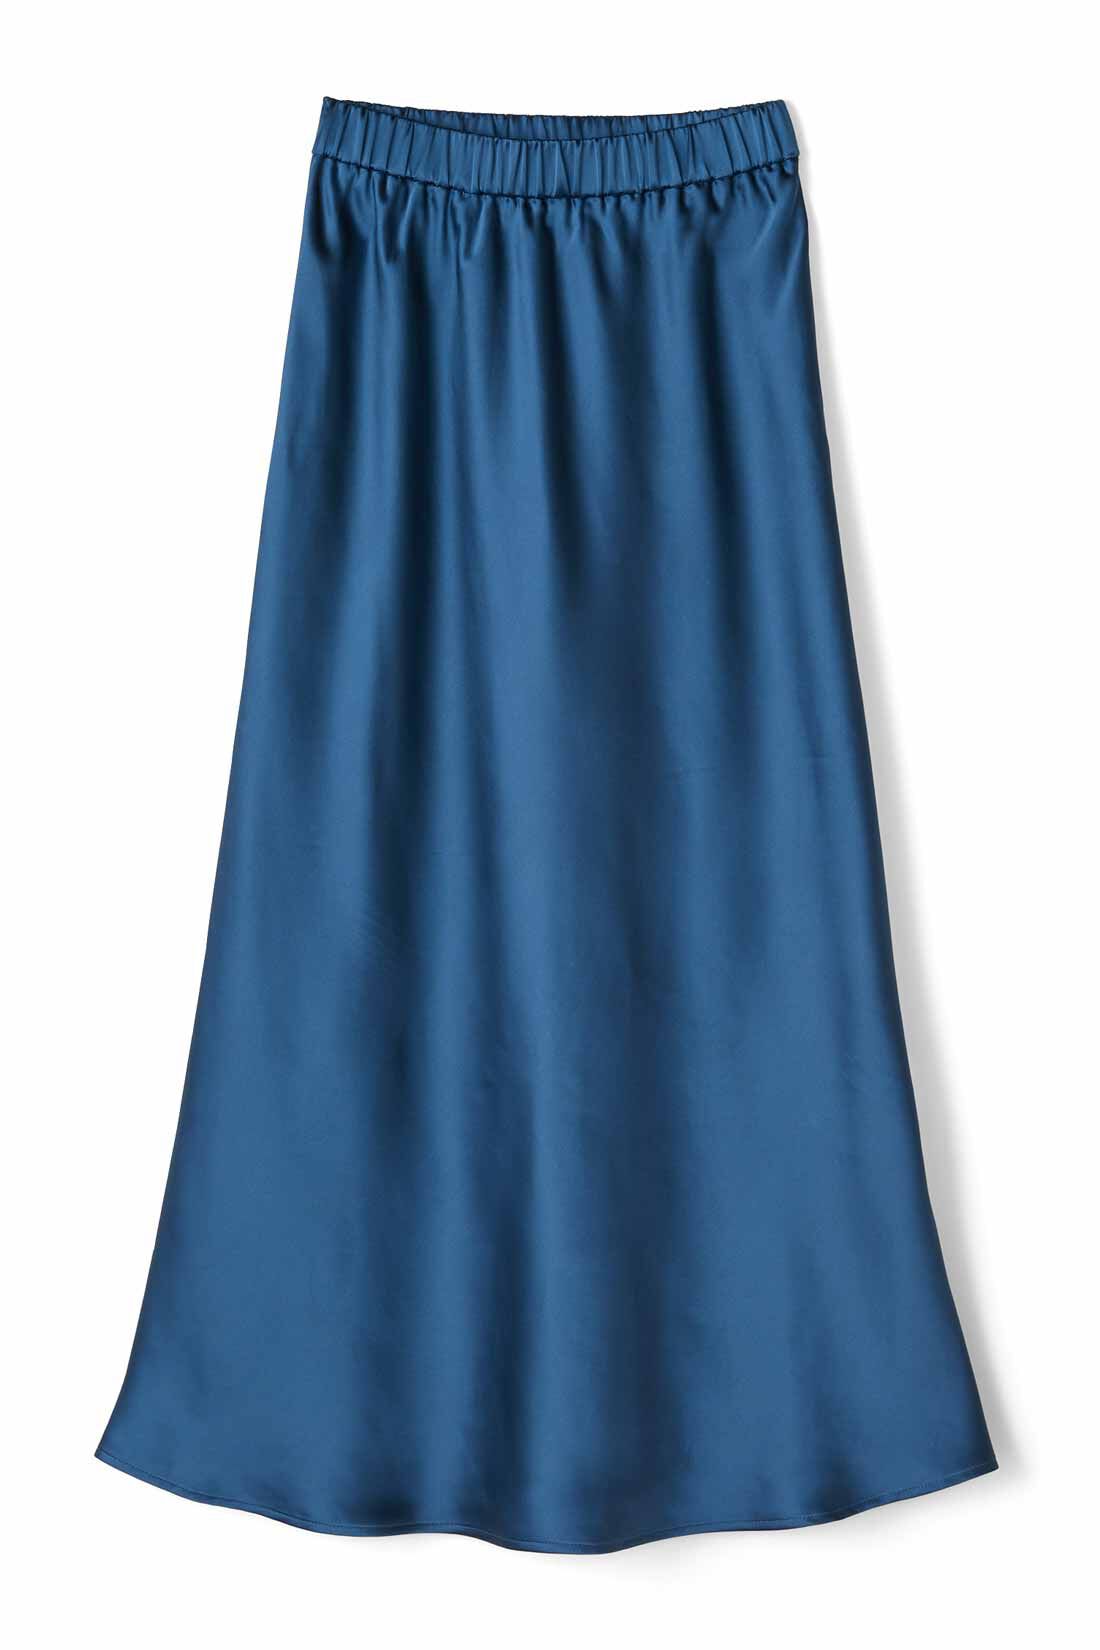 Real Stock|IEDIT[イディット]　サテンの光沢が美しいセミサーキュラースカート〈ディープブルー〉|〈ディープブルー〉